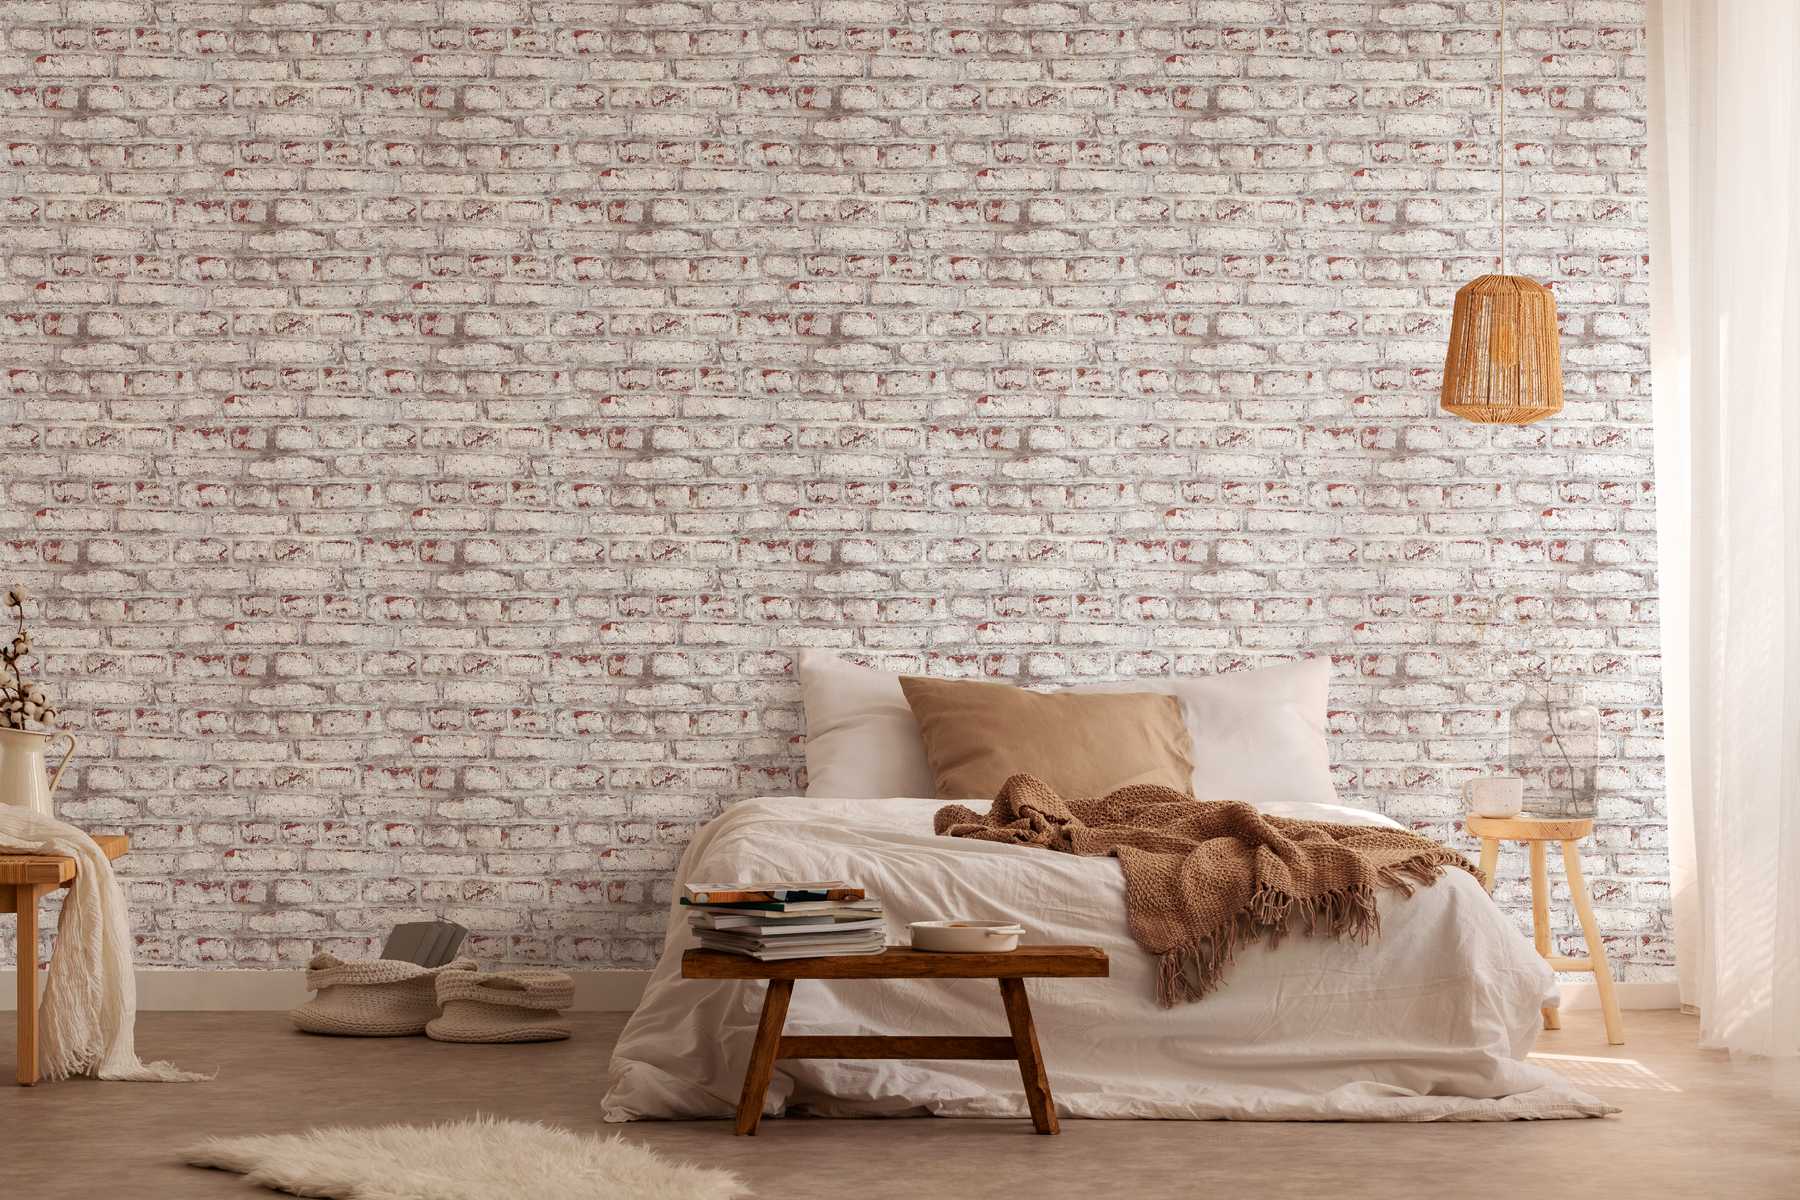             Papier peint maçonnerie avec mur de briques rustique blanchi - blanc, marron, gris
        